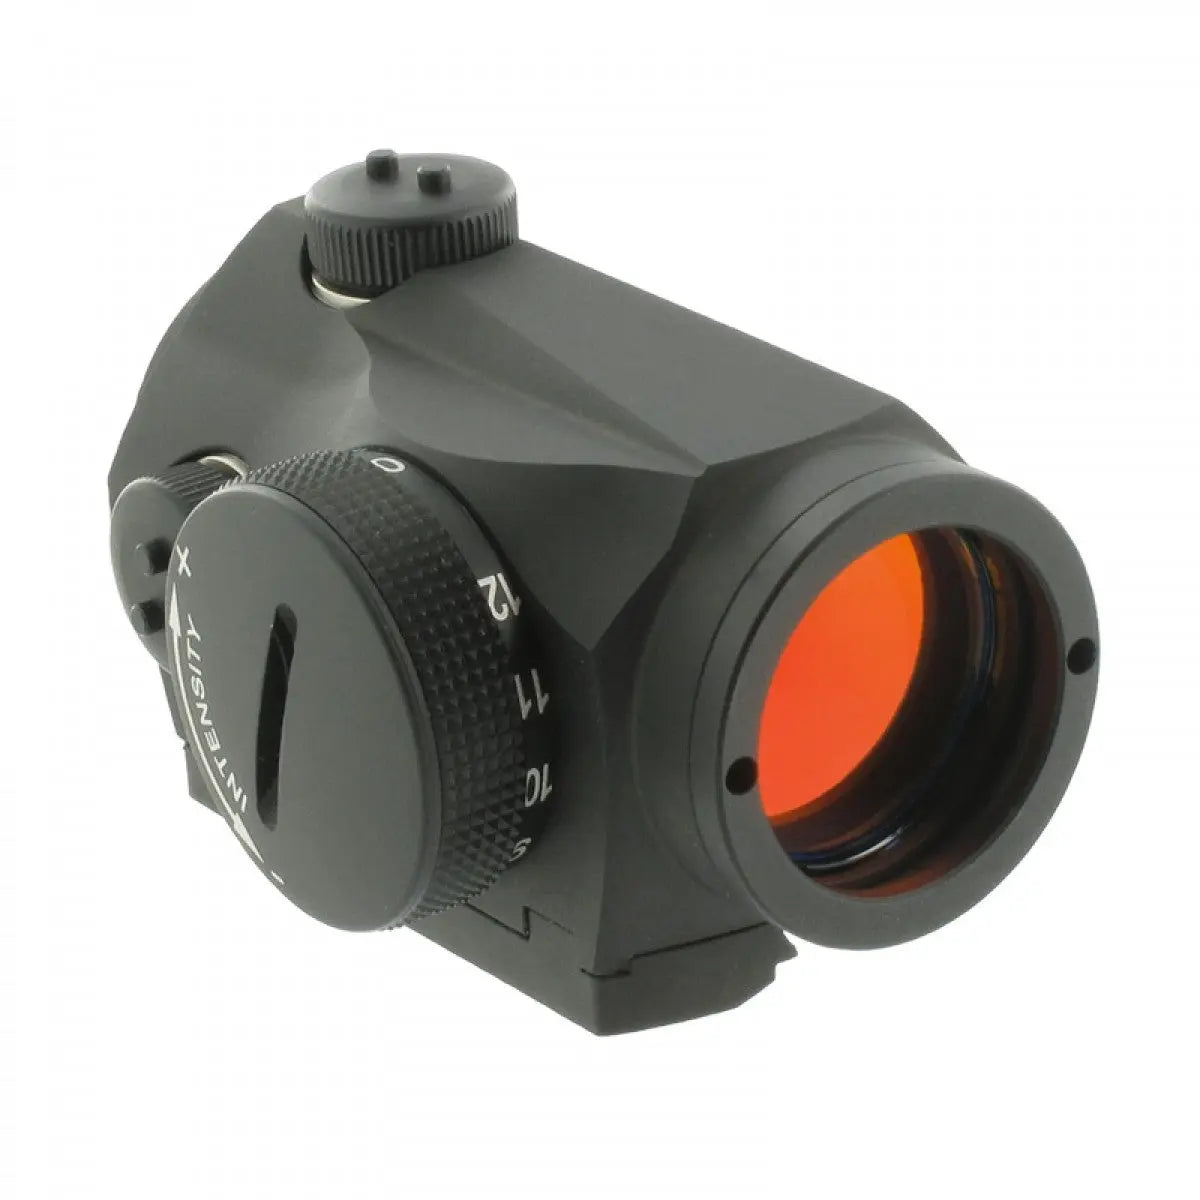 Sistem ochire red dot pentru lise Aimpoint Micro S1 - Articole Vanatoare